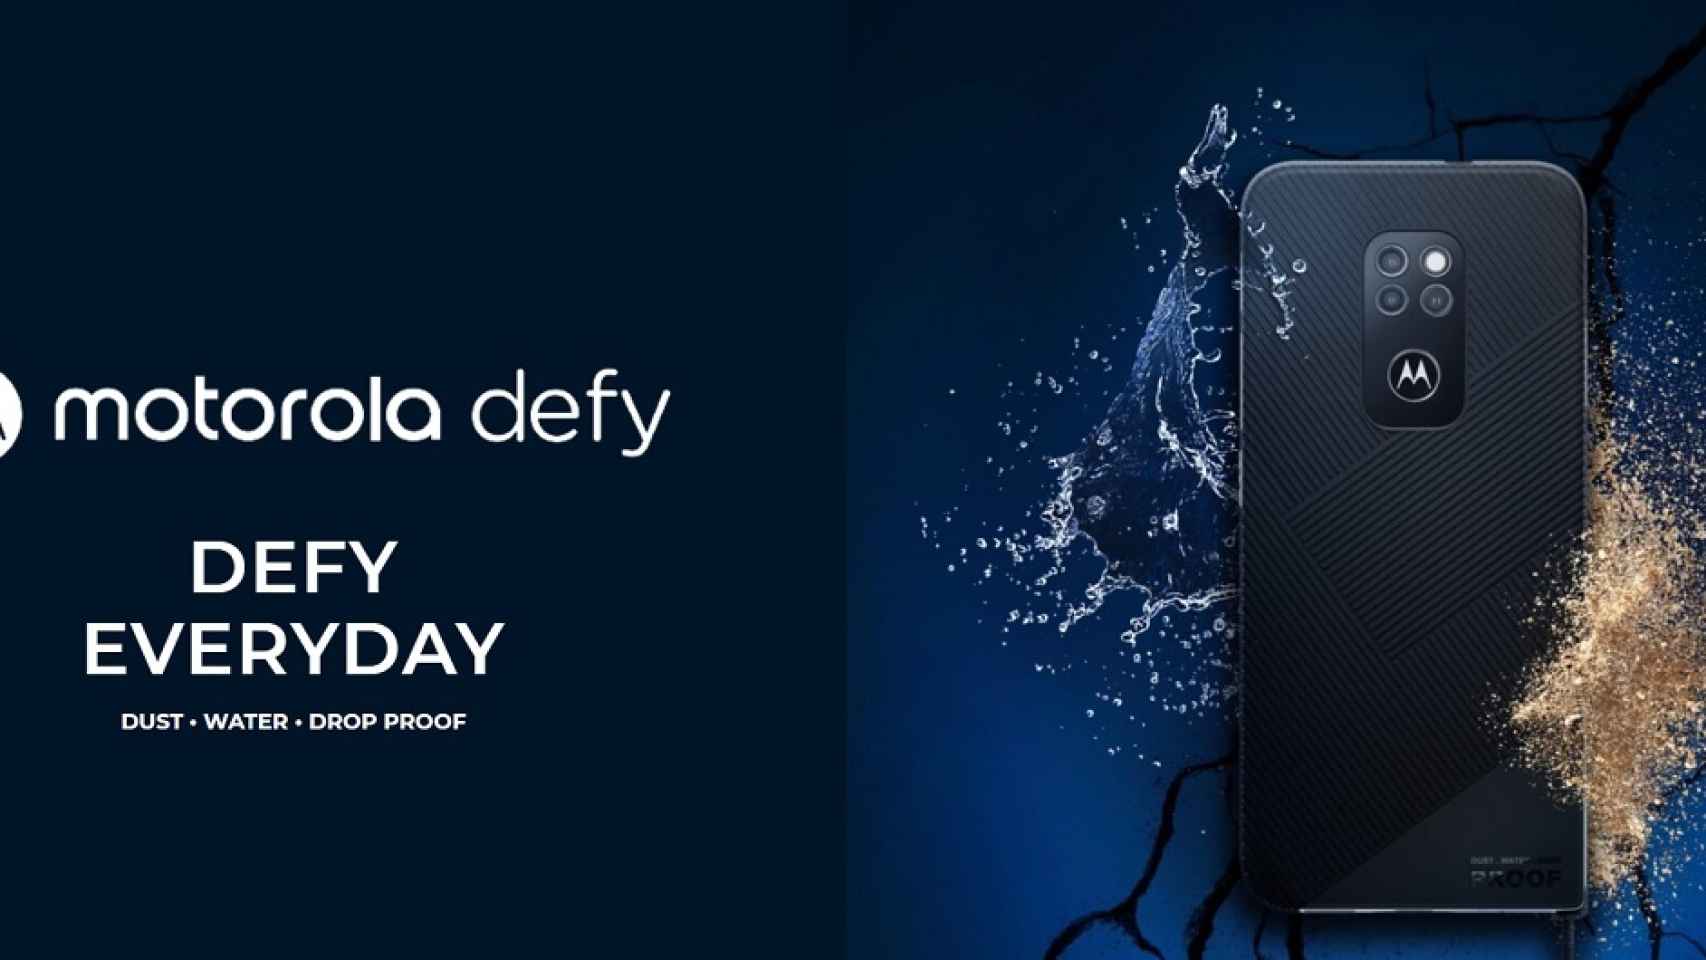 Nuevo Motorola Defy: un móvil ultraresistente